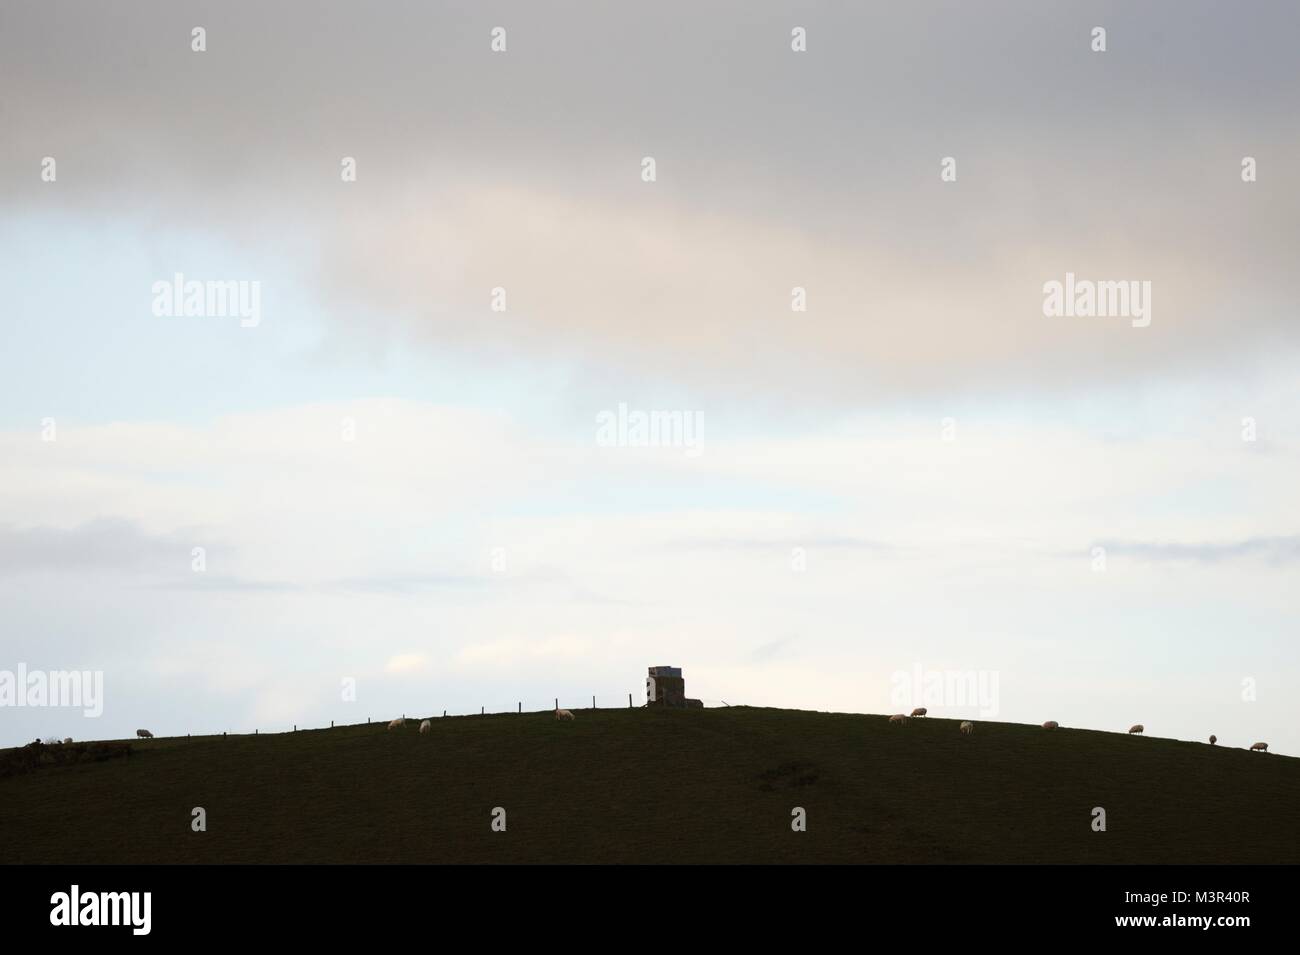 Square struttura in pietra su una collina curvo con il pascolo ovino, Wales, Regno Unito. Foto Stock